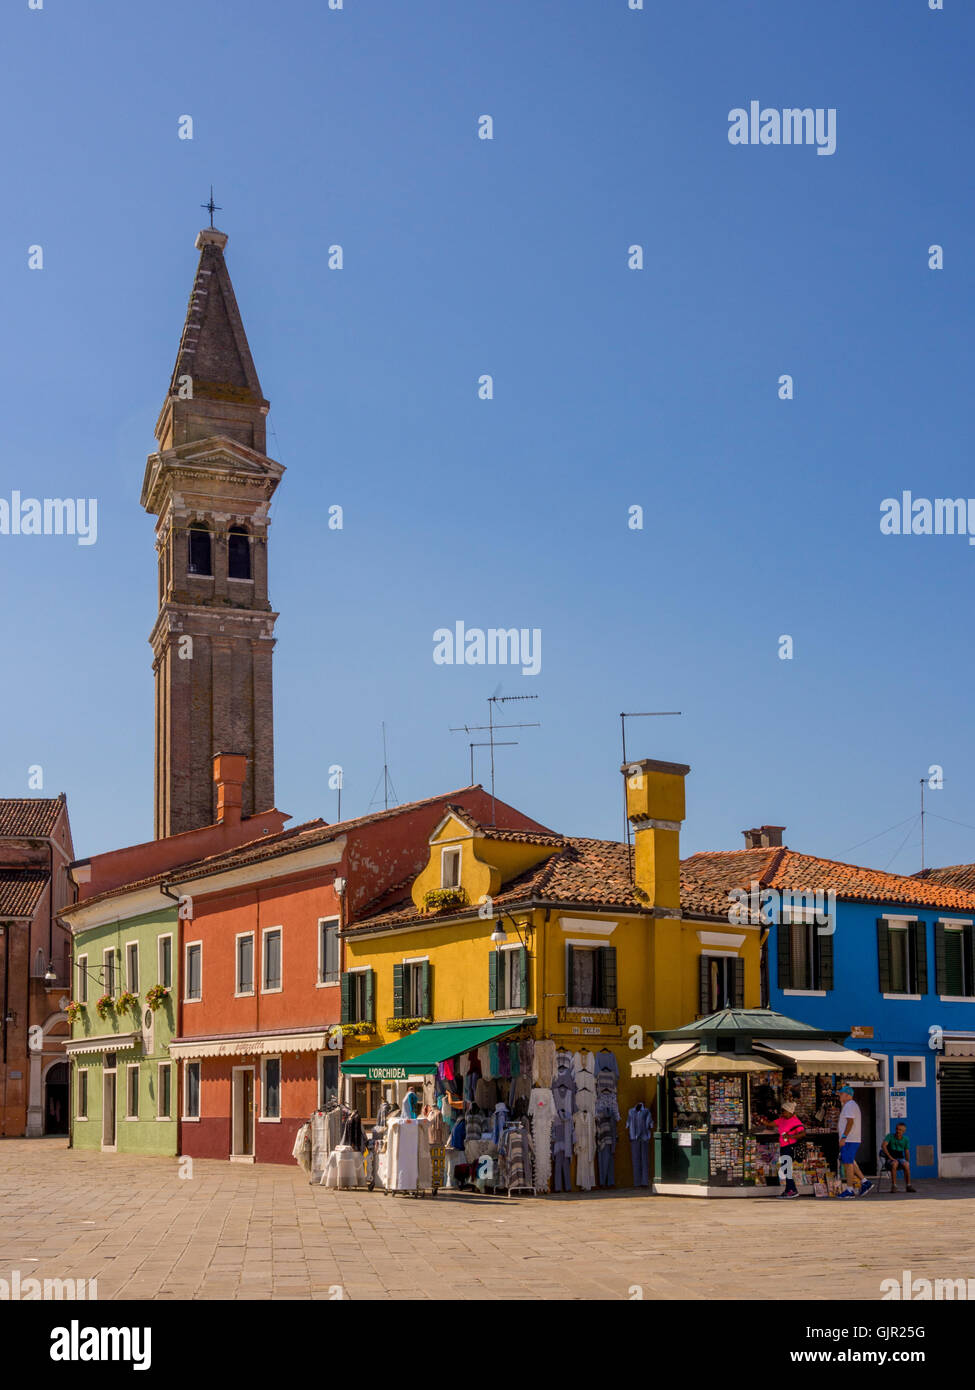 Gli esterni tradizionali e colorati dell'isola di Burano. Venezia, Italia. Foto Stock